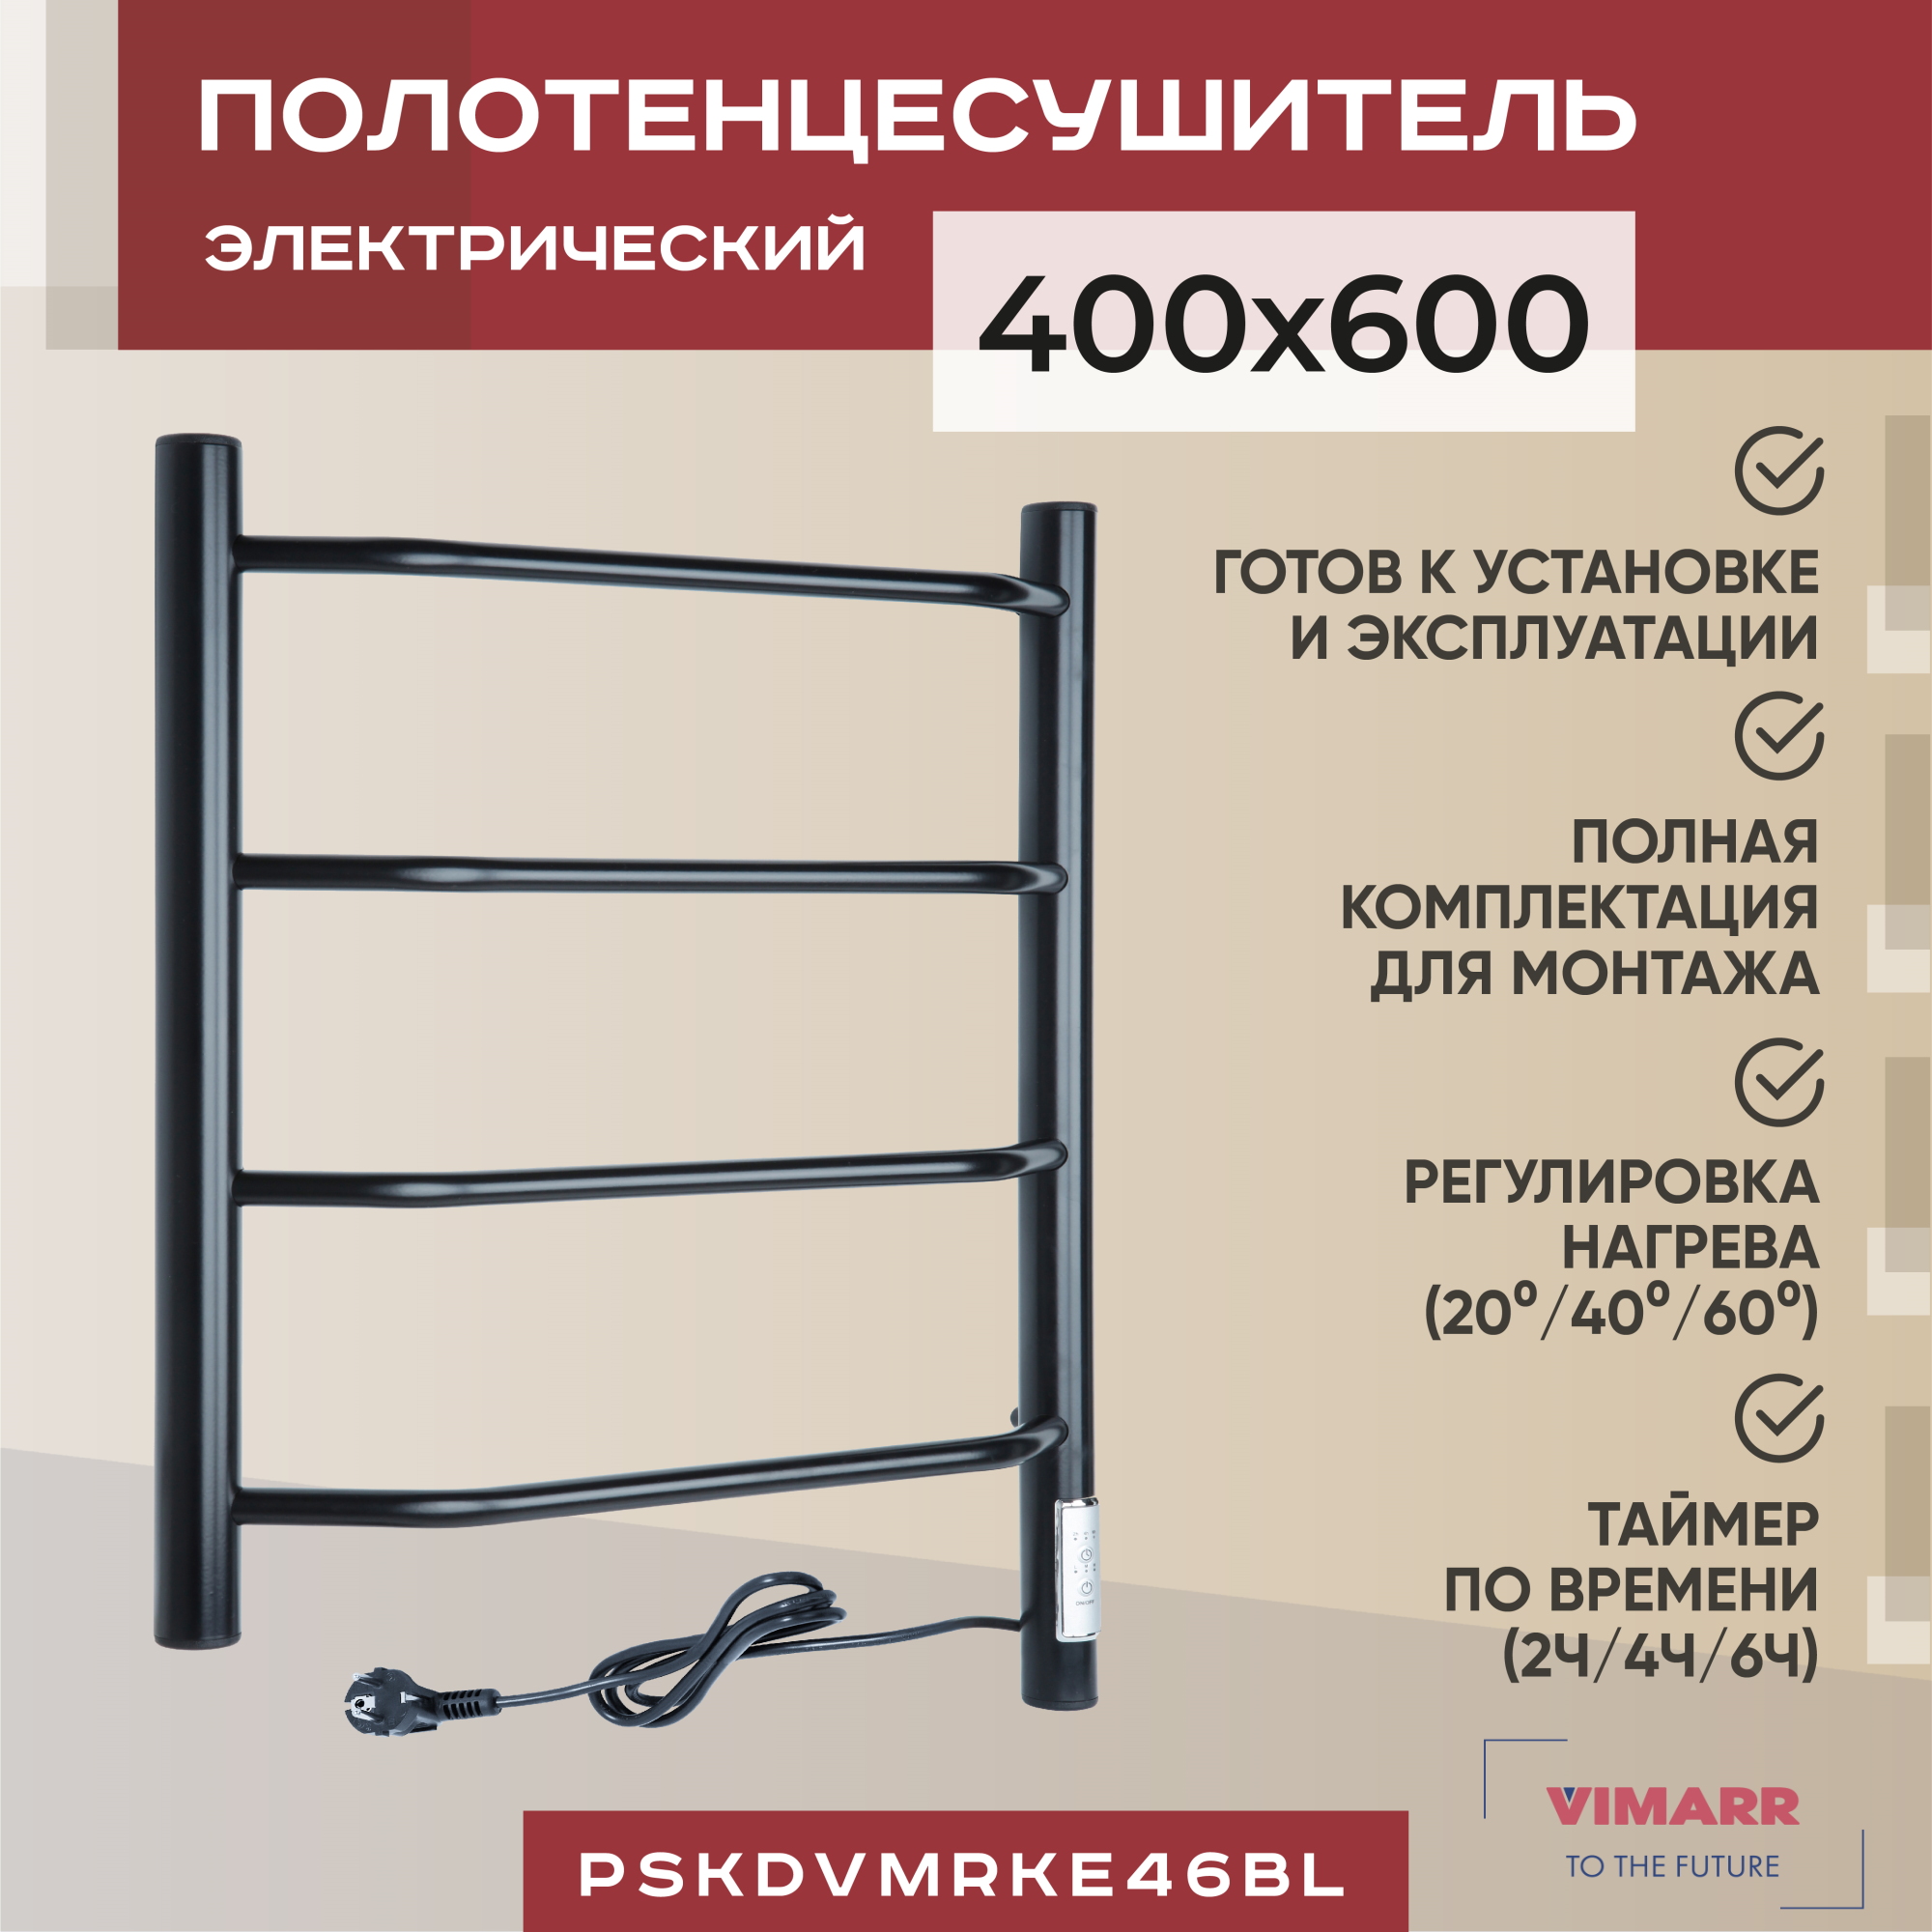 Электрический полотенцесушитель Vimarr Kaskad 400x600 черный,регулятор температуры, таймер